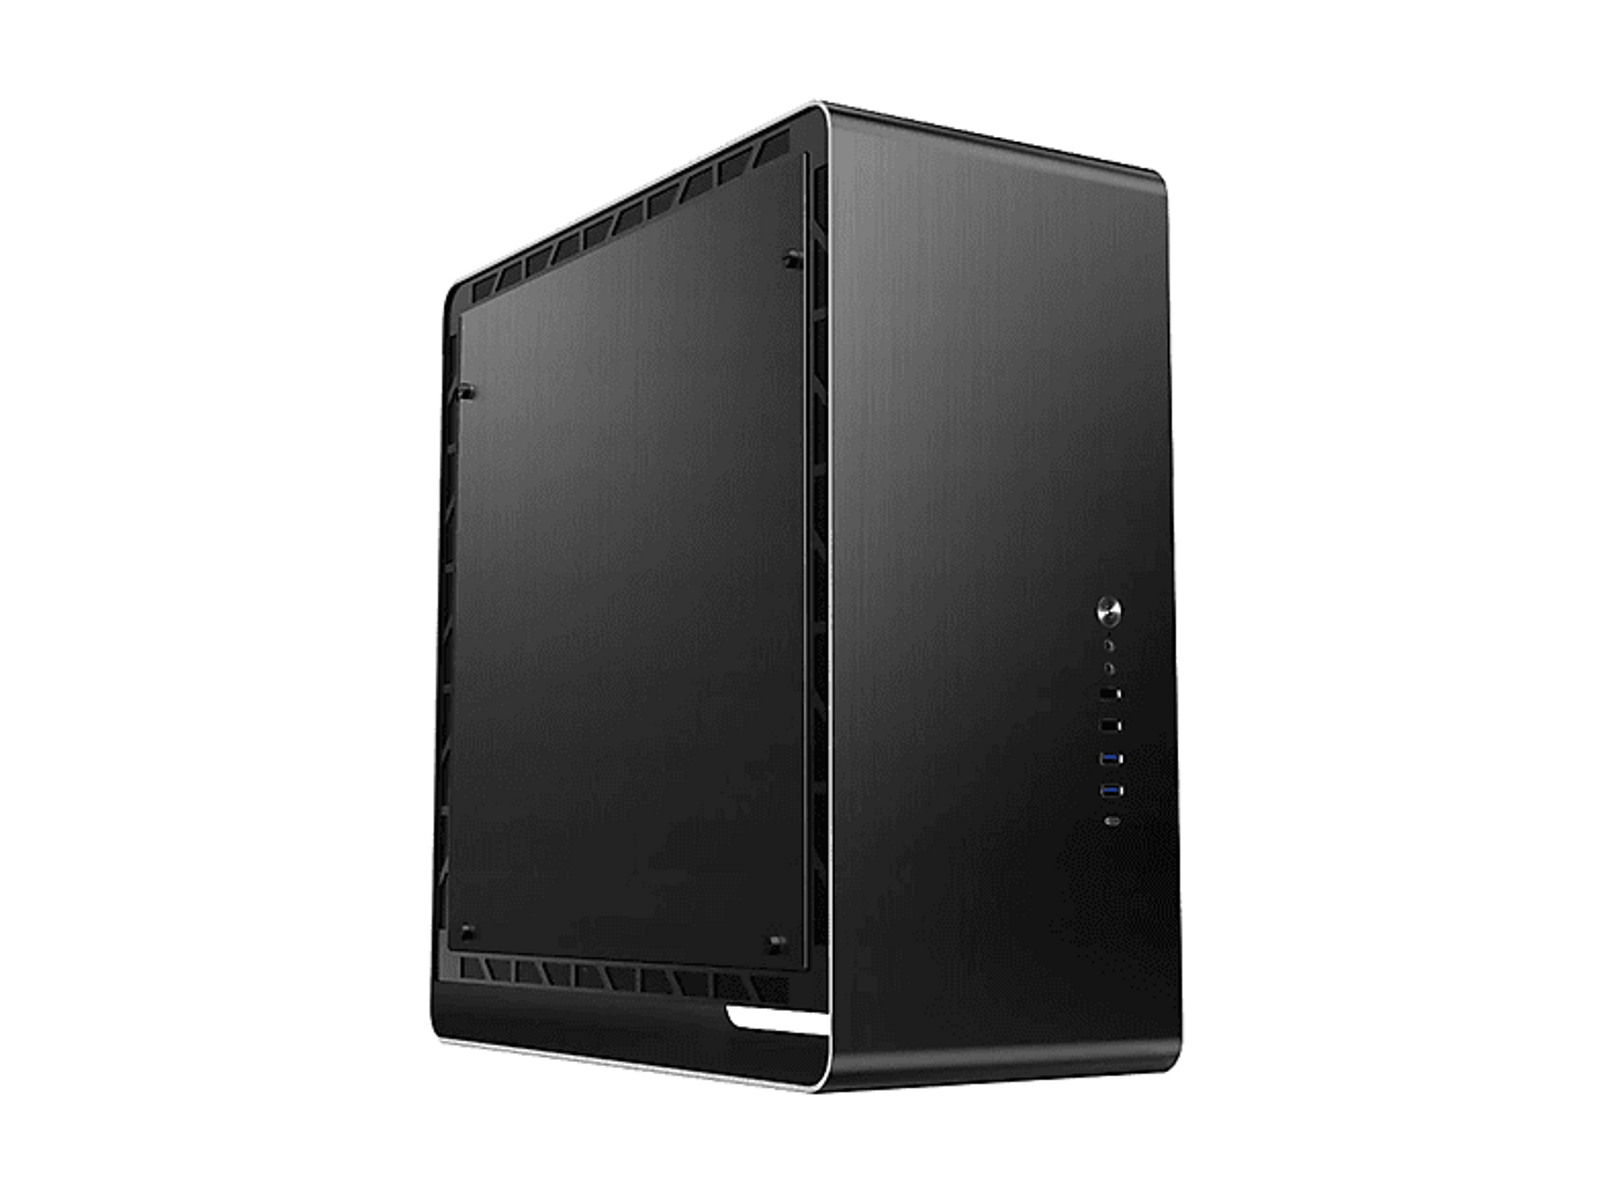 PC Black UMX6 AL JONSBO Schwarz Gehäuse,